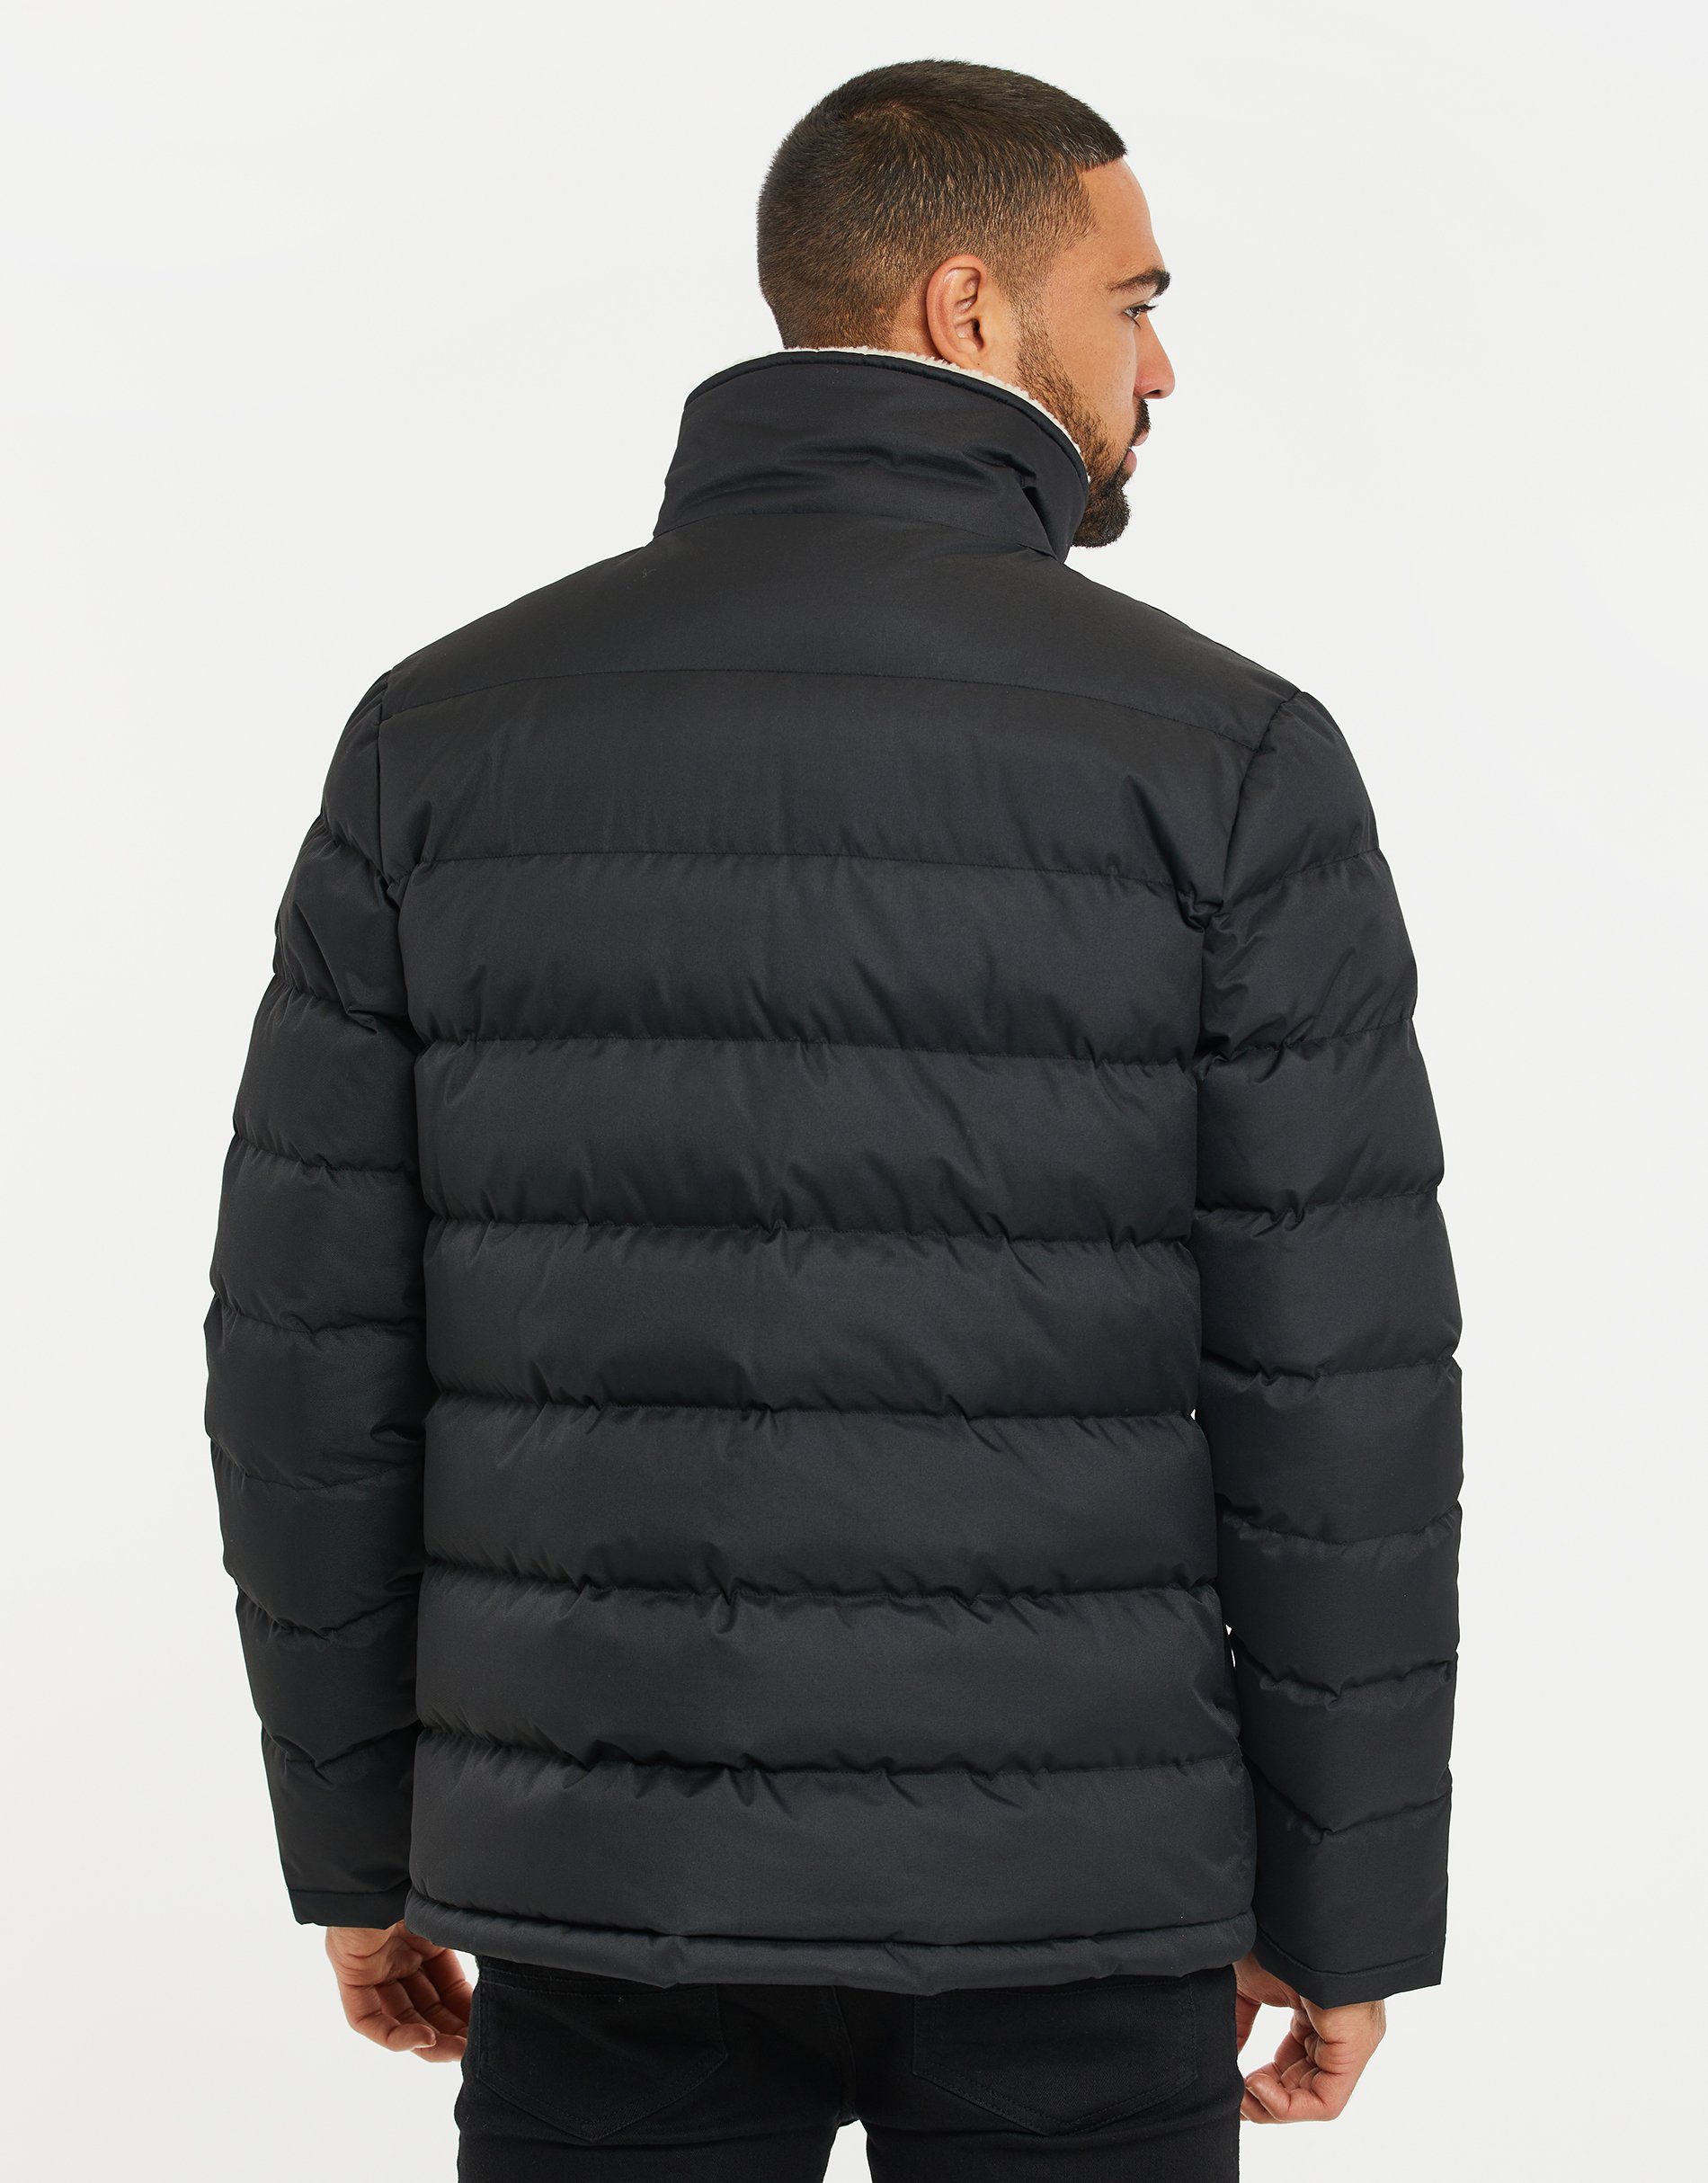 Standard Ellen Threadbare schwarz Recycled Jacket Black- (GRS) Winterjacke Global zertifiziert THB